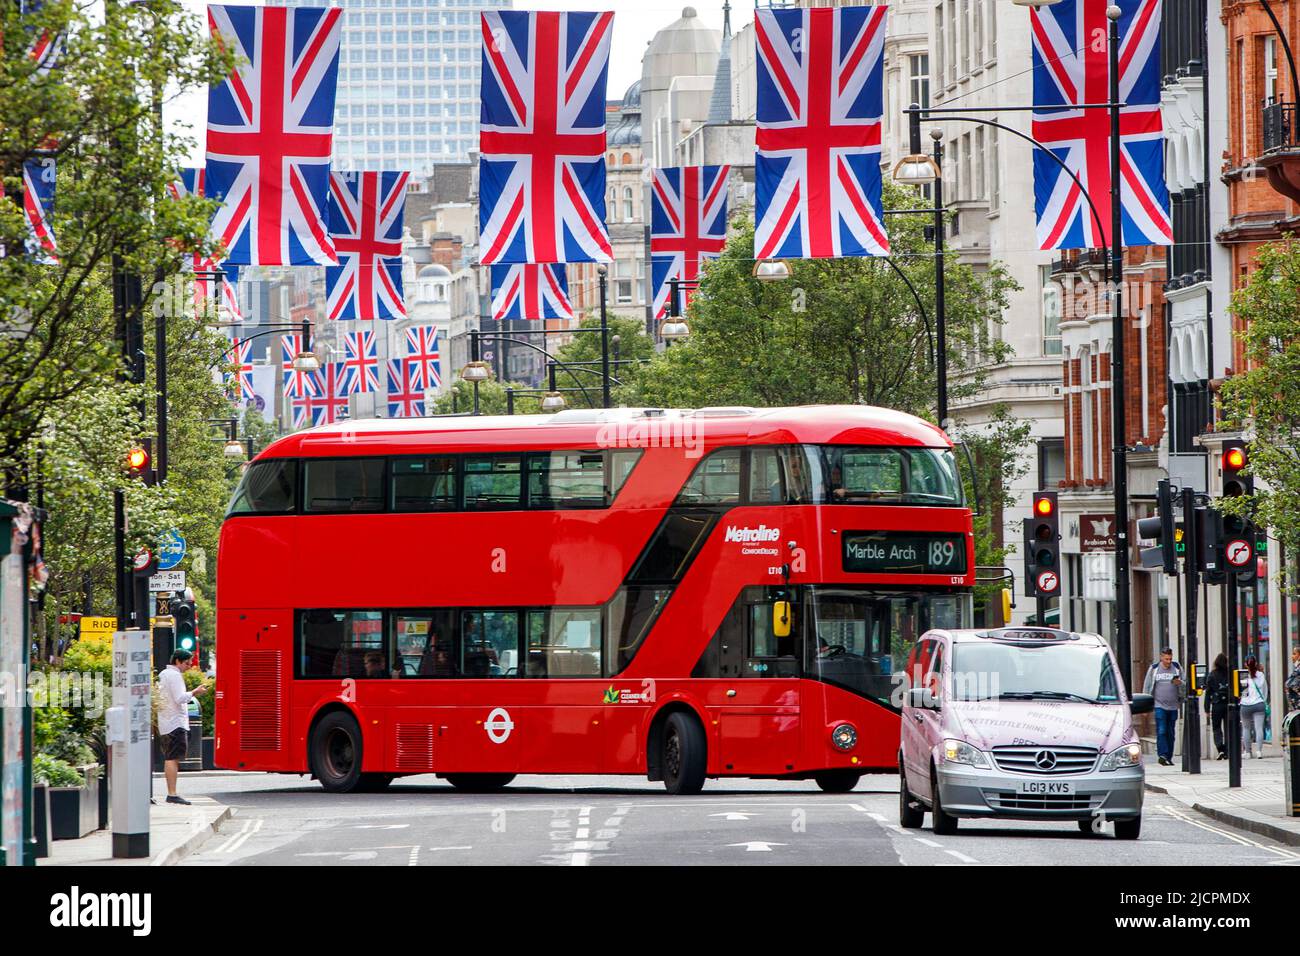 Red London Double Decker bus, route 189 à Marble Arch sur Oxford Street, Londres, Angleterre, Royaume-Uni le mercredi, 18 mai 2022. Banque D'Images